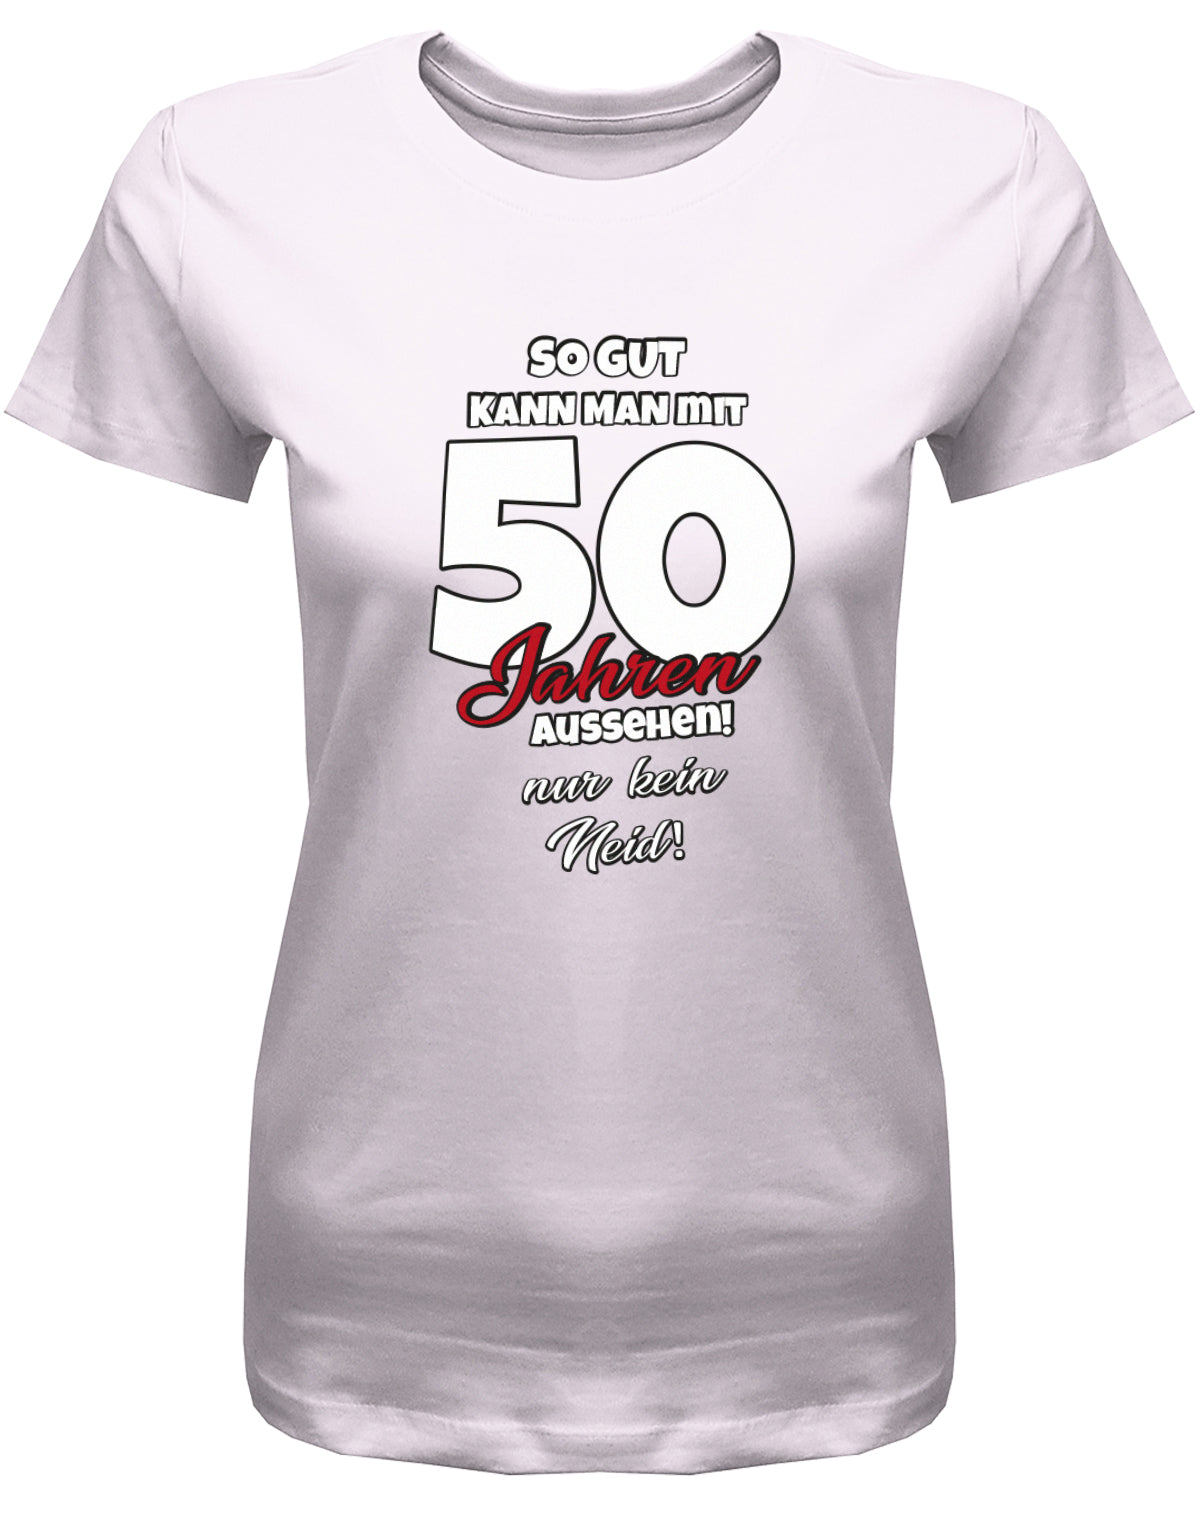 Lustiges T-Shirt zum 50 Geburtstag für die Frau Bedruckt mit So gut kann man mit 50 Jahren aussehen! Nur kein Neid! Rosa